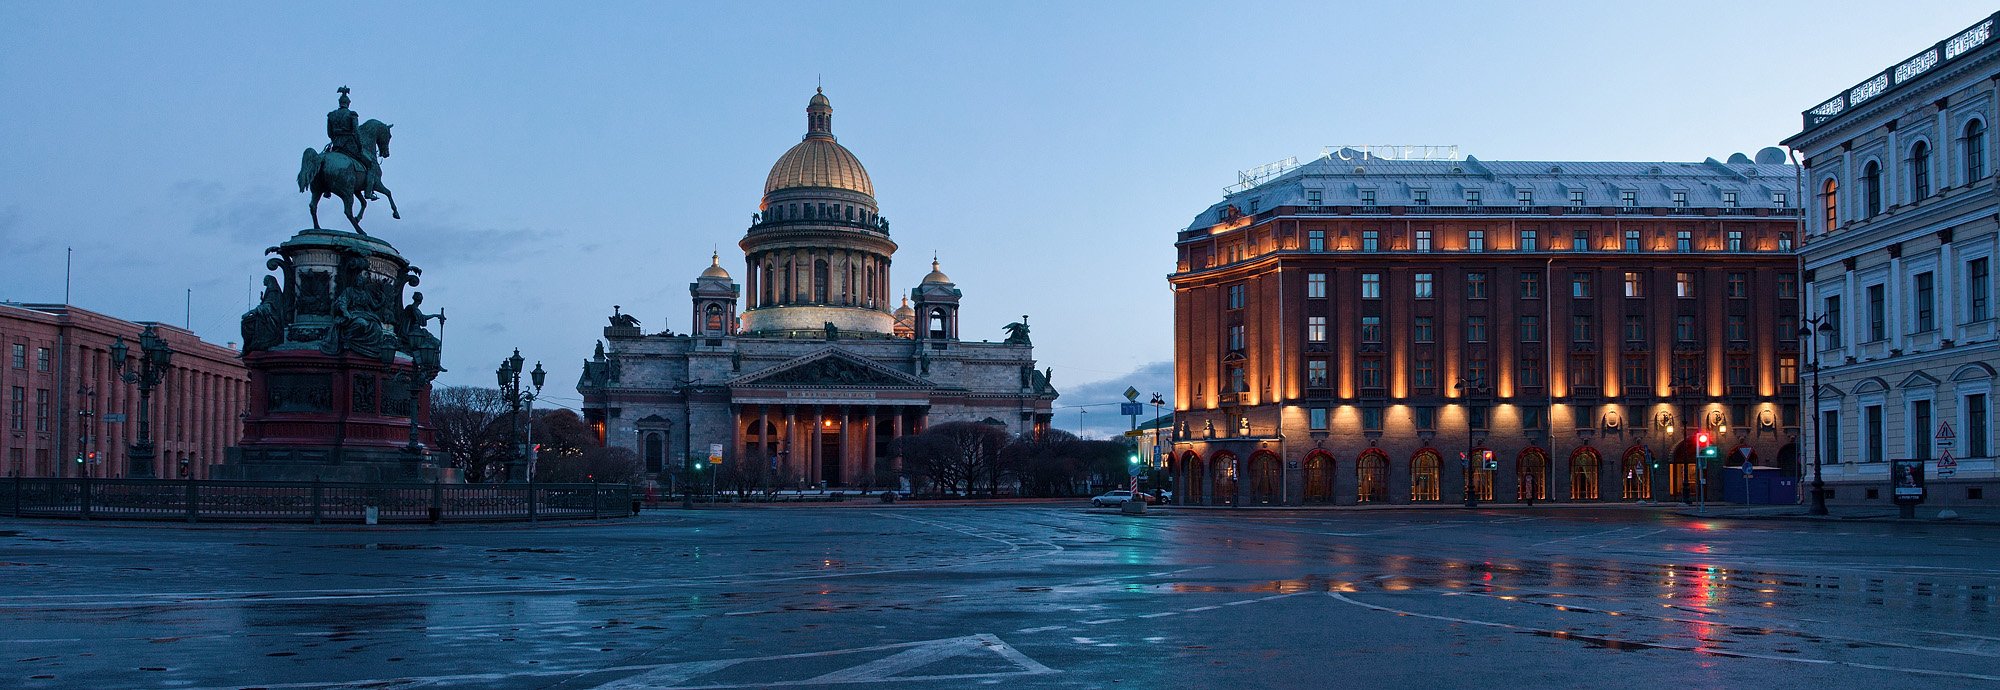 Белые ночи в Санкт-Петербурге Исаакиевская площадь